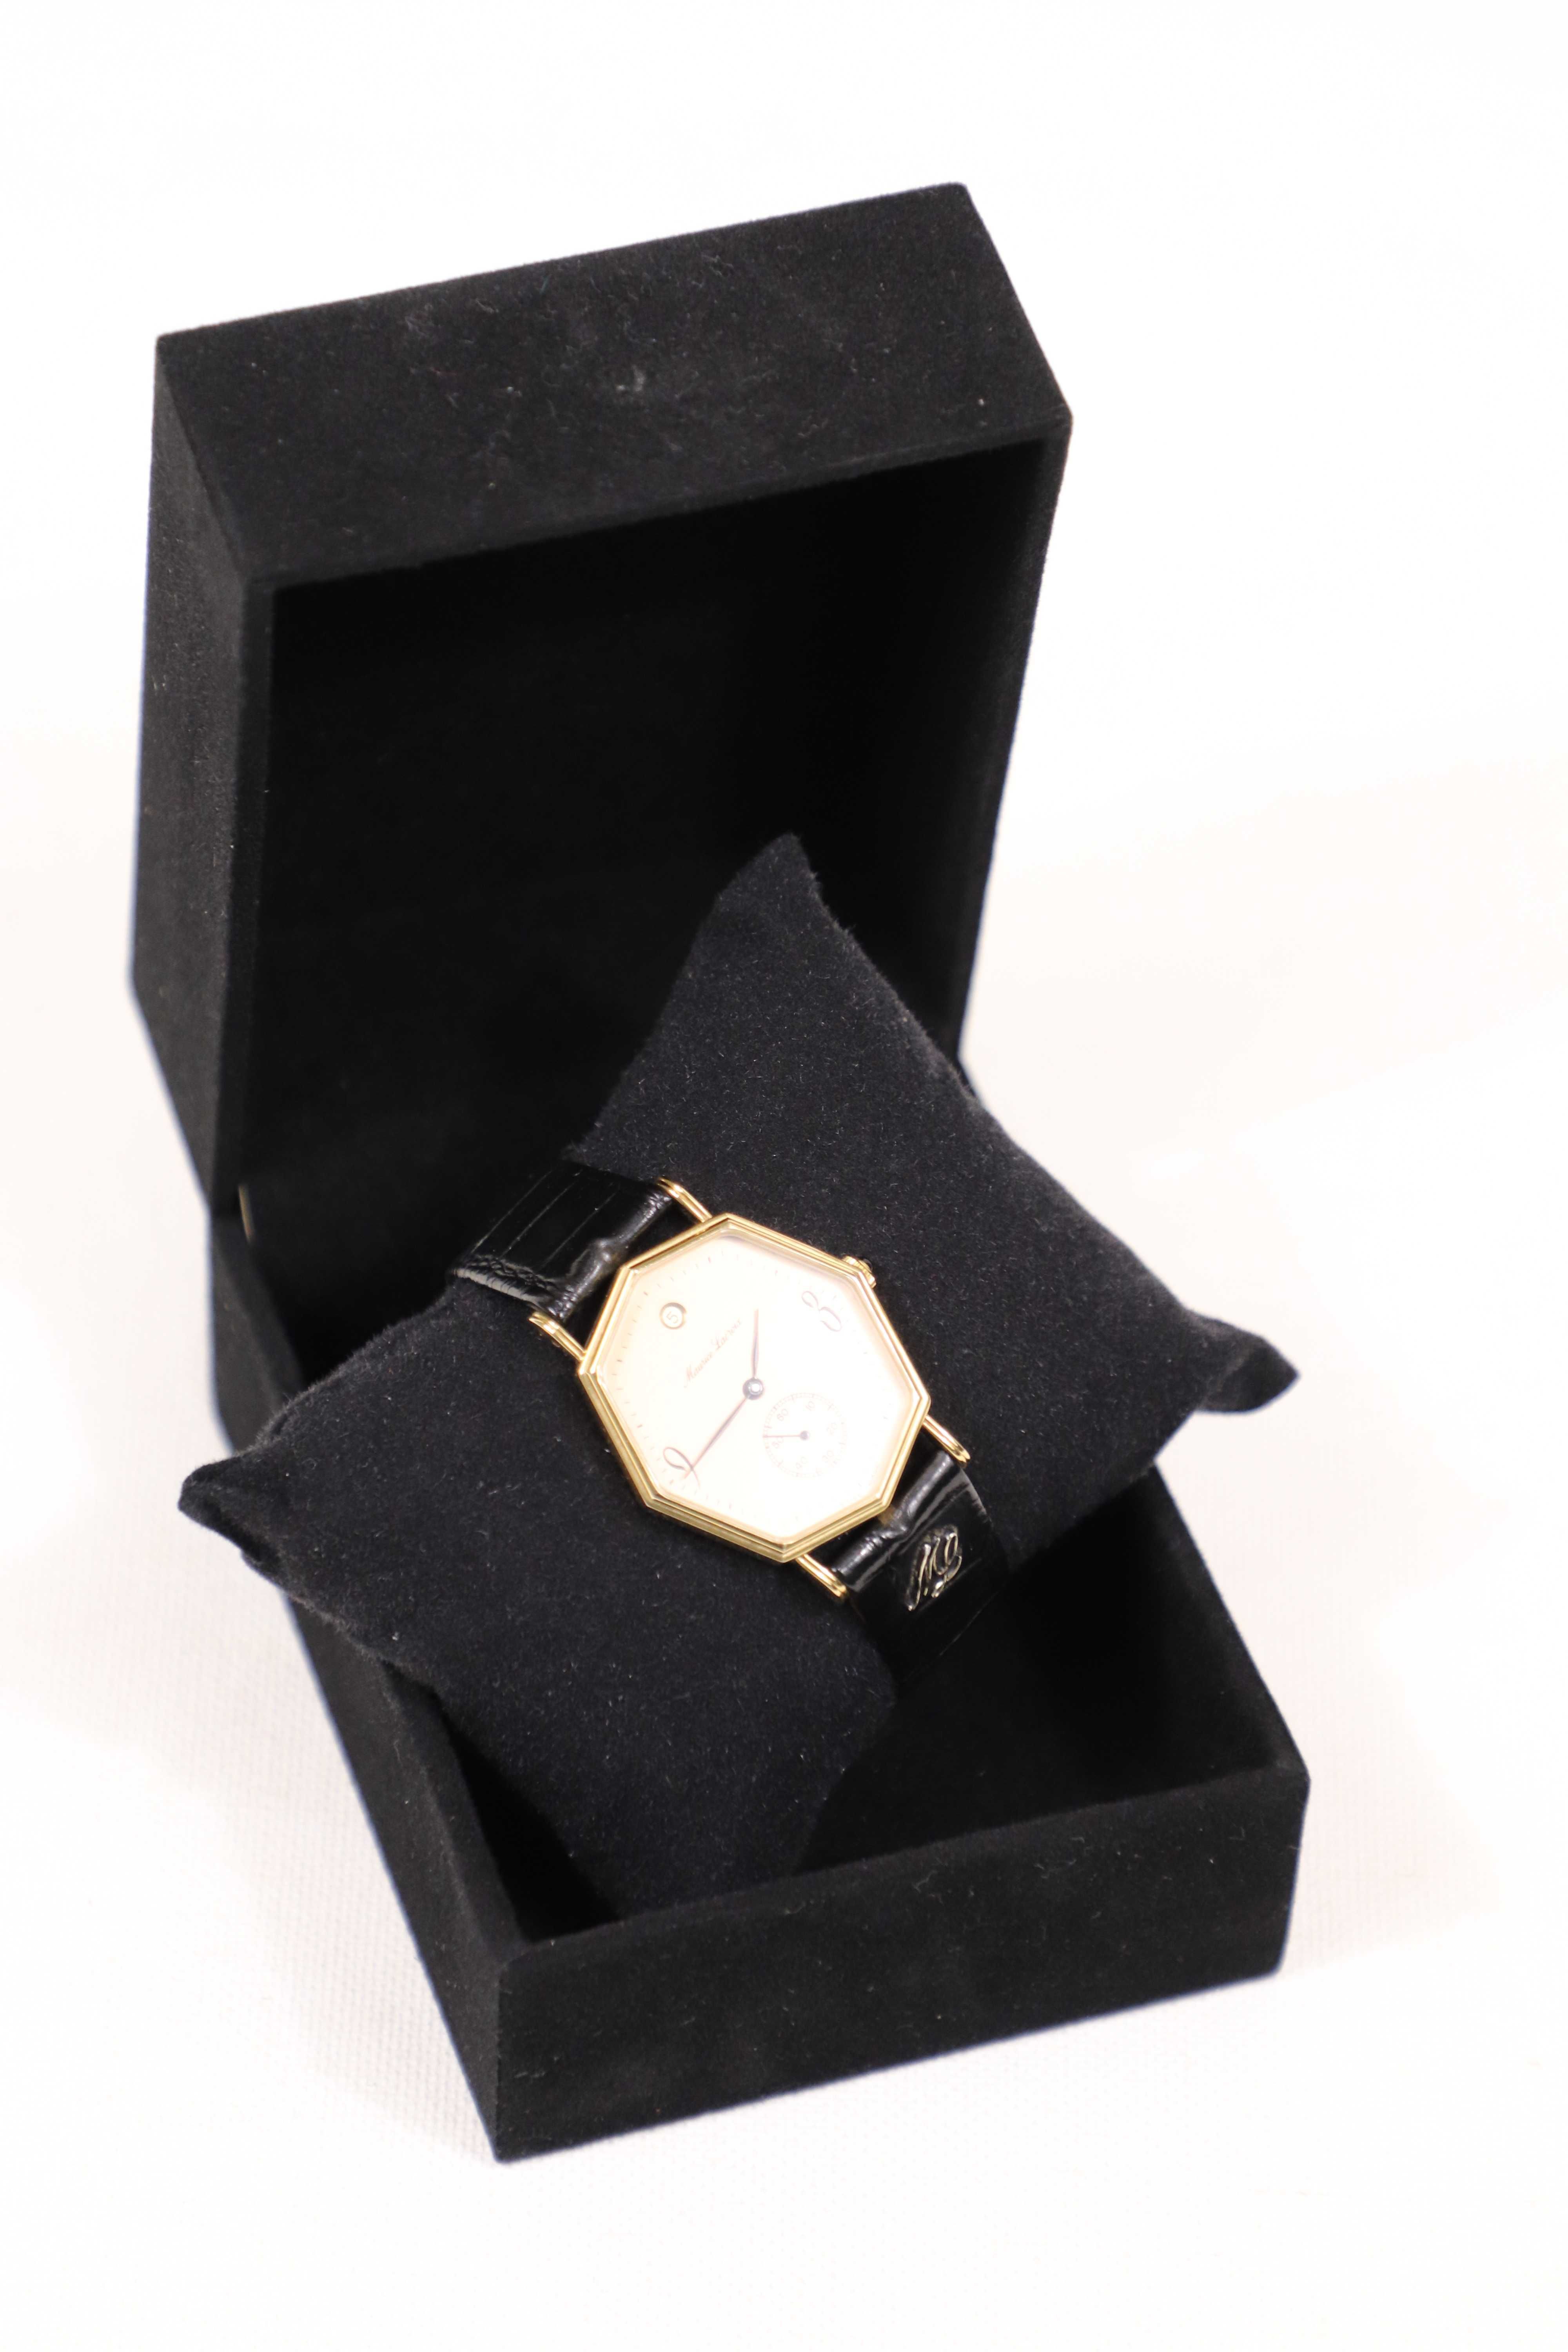 Relógio Maurice Lacroix antigo de pulso de mulher - Corda/Gold Plated